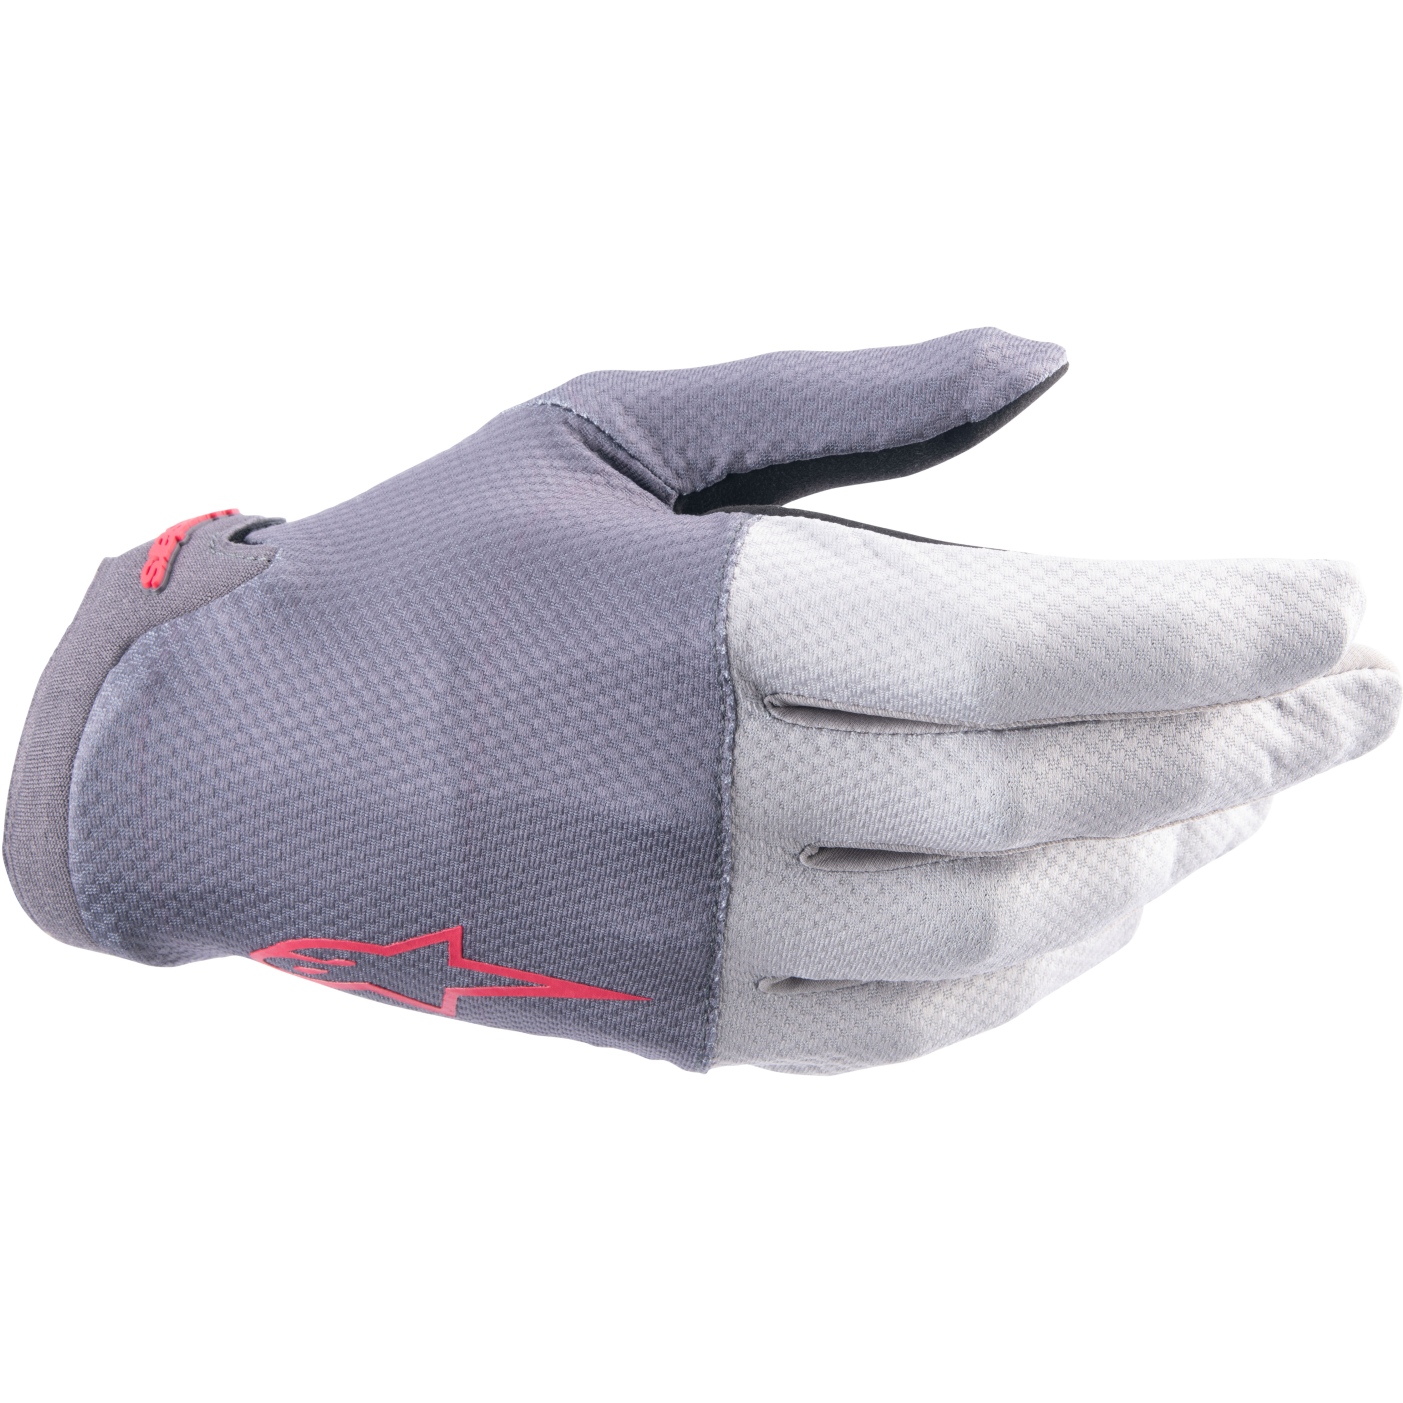 Picture of Alpinestars A-Aria Gloves - dark gray